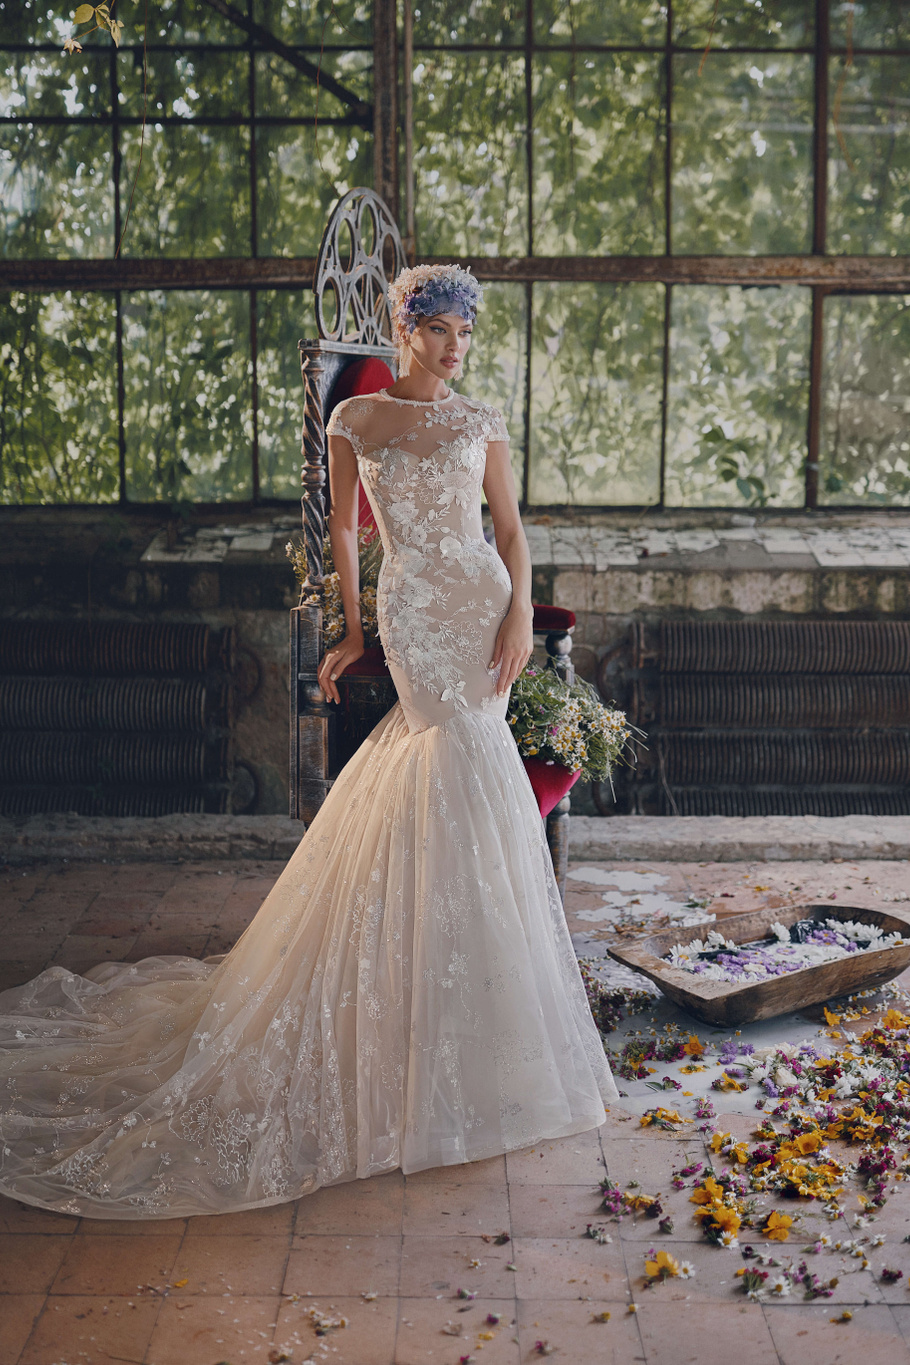 Купить свадебное платье «Моника» Анже Этуаль из коллекции Леди Перл 2021 года в салоне «Мэри Трюфель»